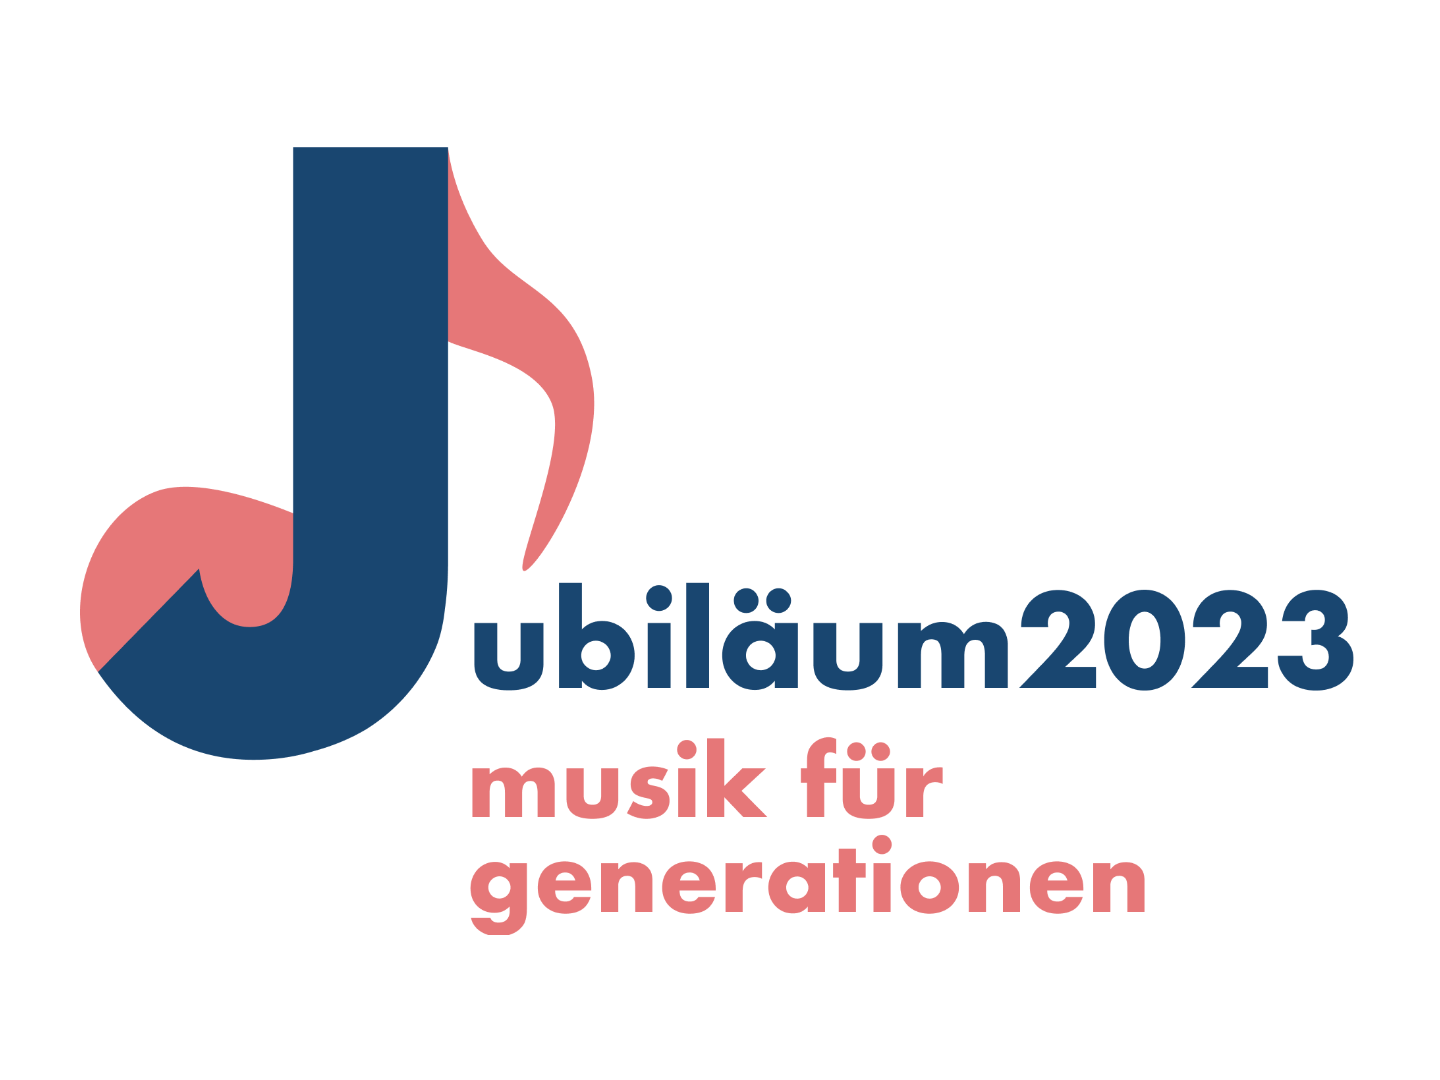 Jubiläum 2023